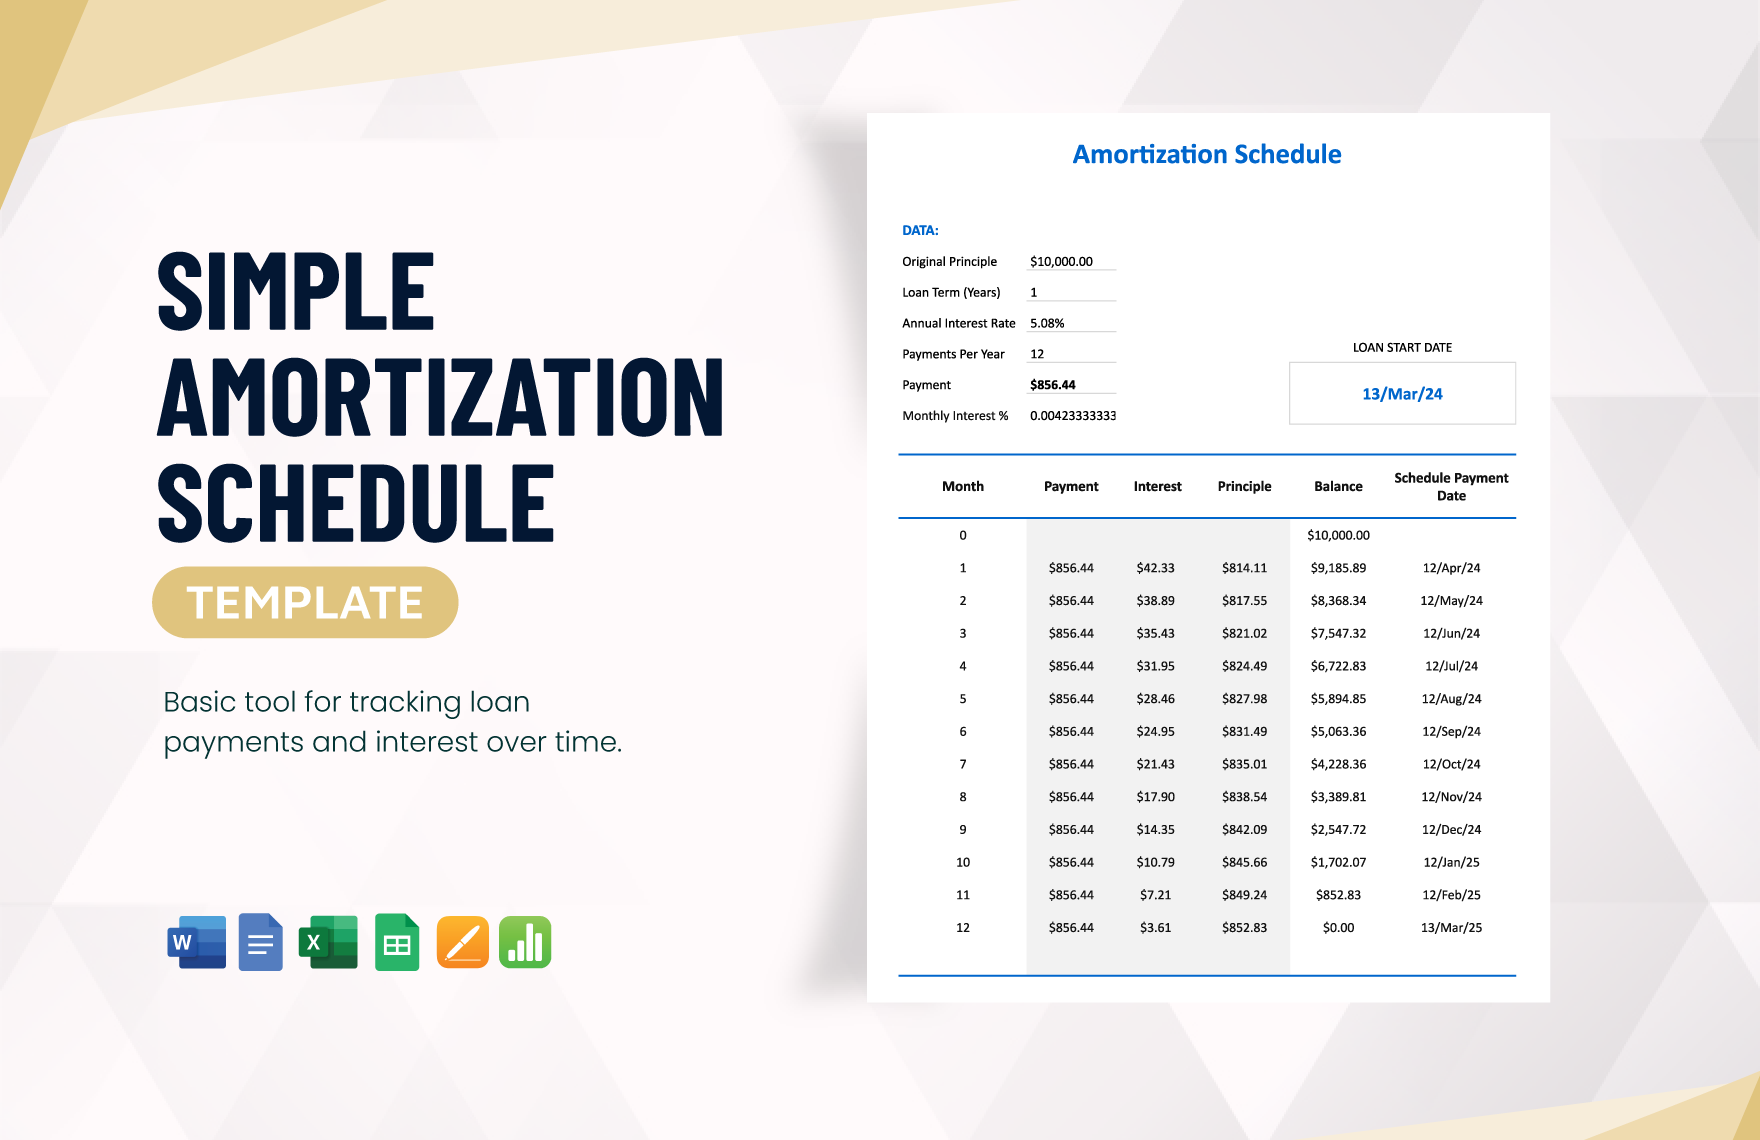 Simple Amortization Schedule Template